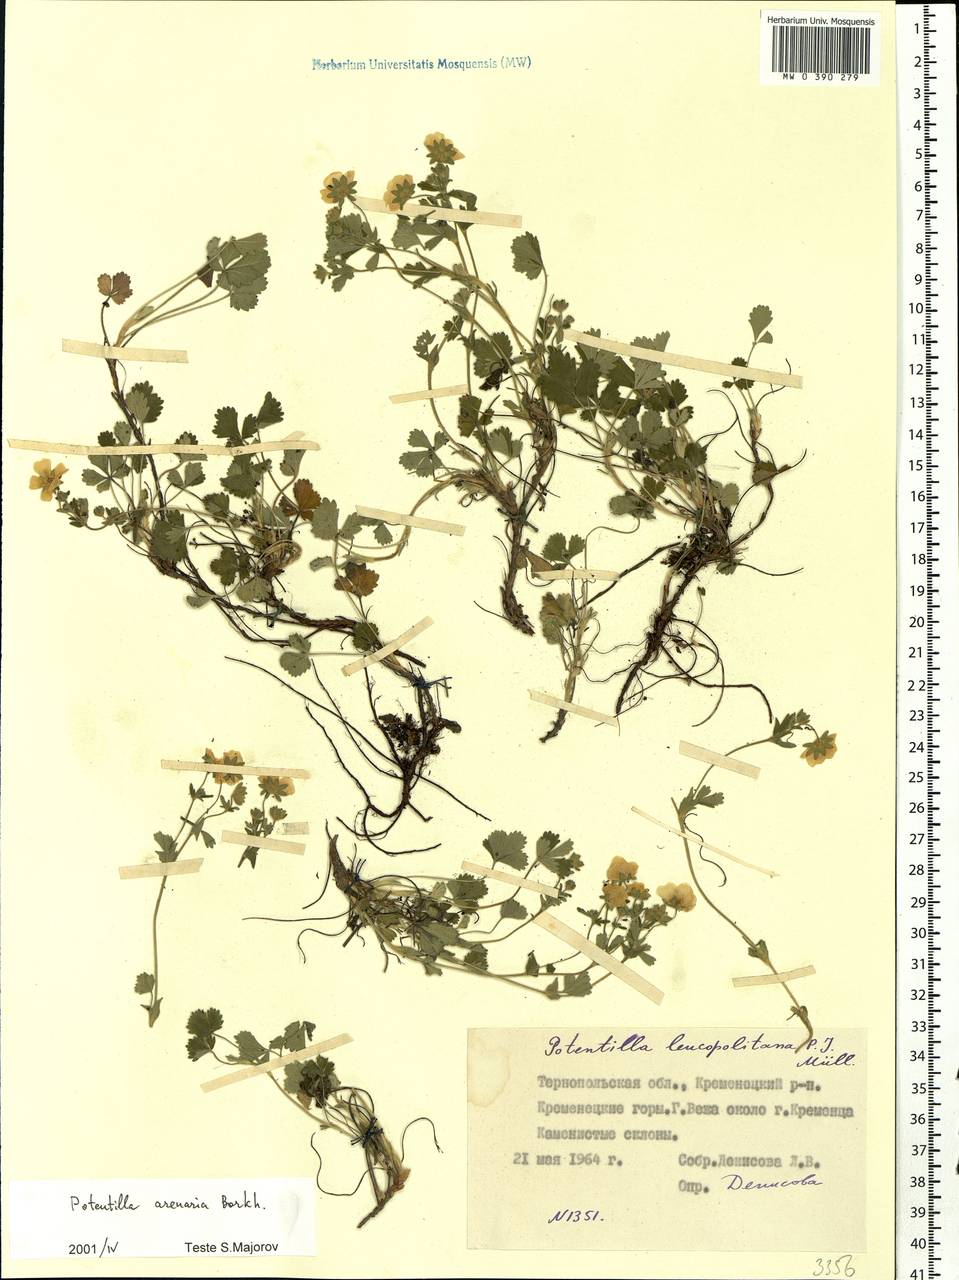 Potentilla cinerea subsp. incana (G. Gaertn., B. Mey. & Scherb.) Asch., Восточная Европа, Западно-Украинский район (E13) (Украина)